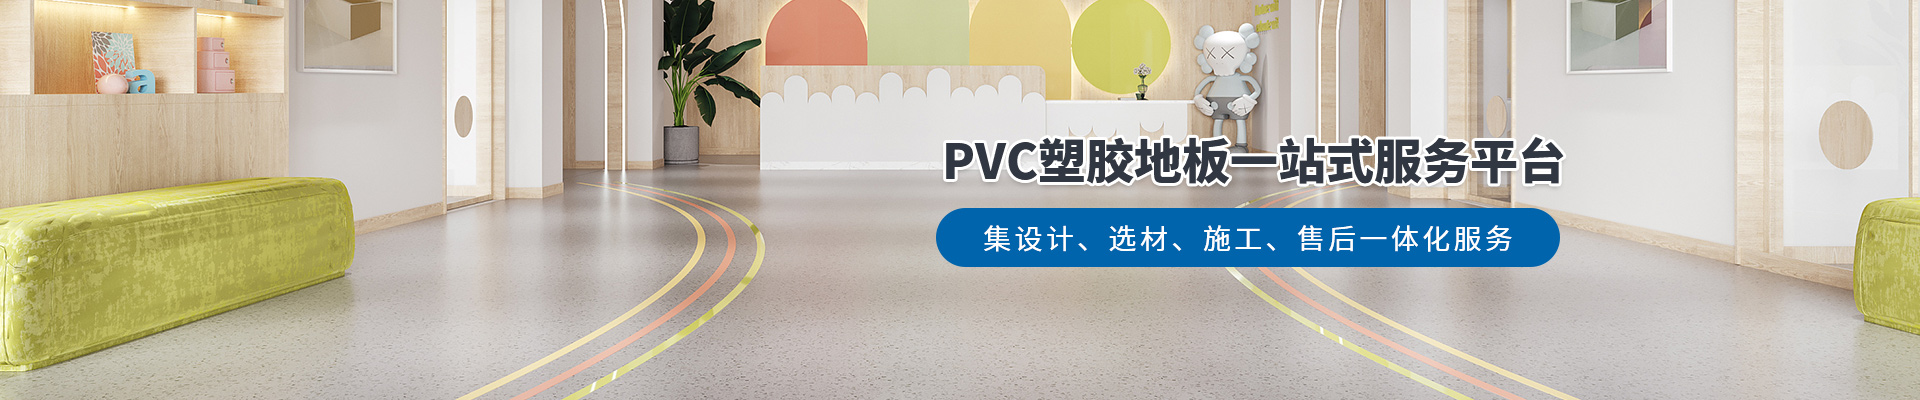 鳳城橡塑，PVC塑膠地板一站式服務平臺